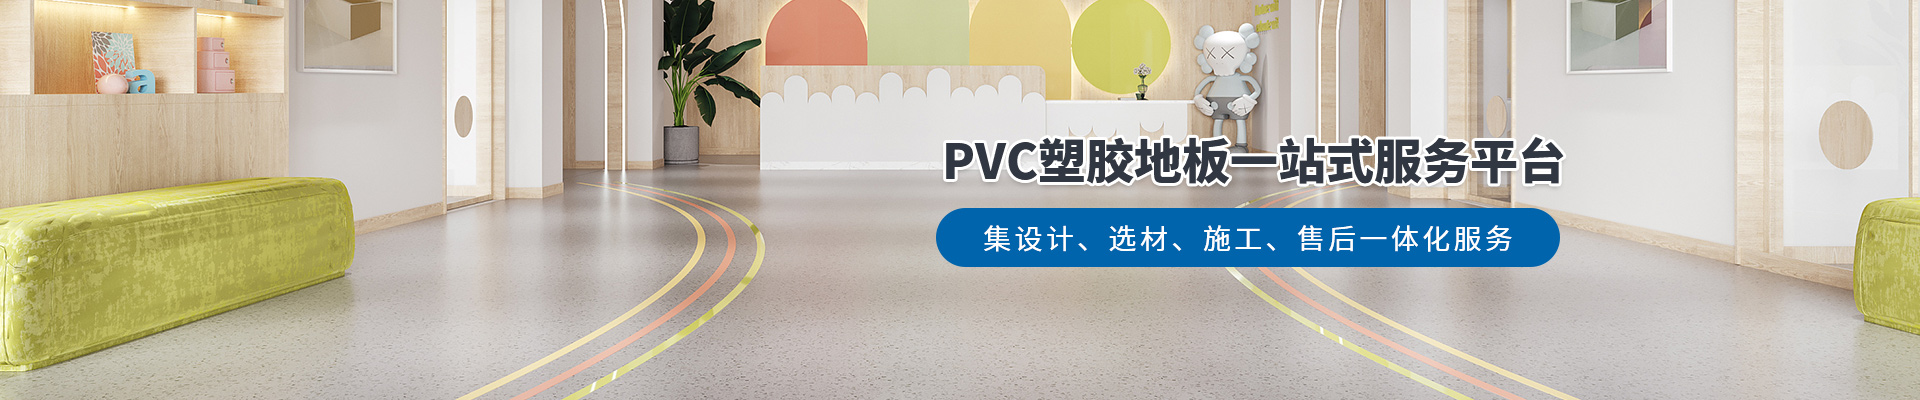 鳳城橡塑，PVC塑膠地板一站式服務平臺